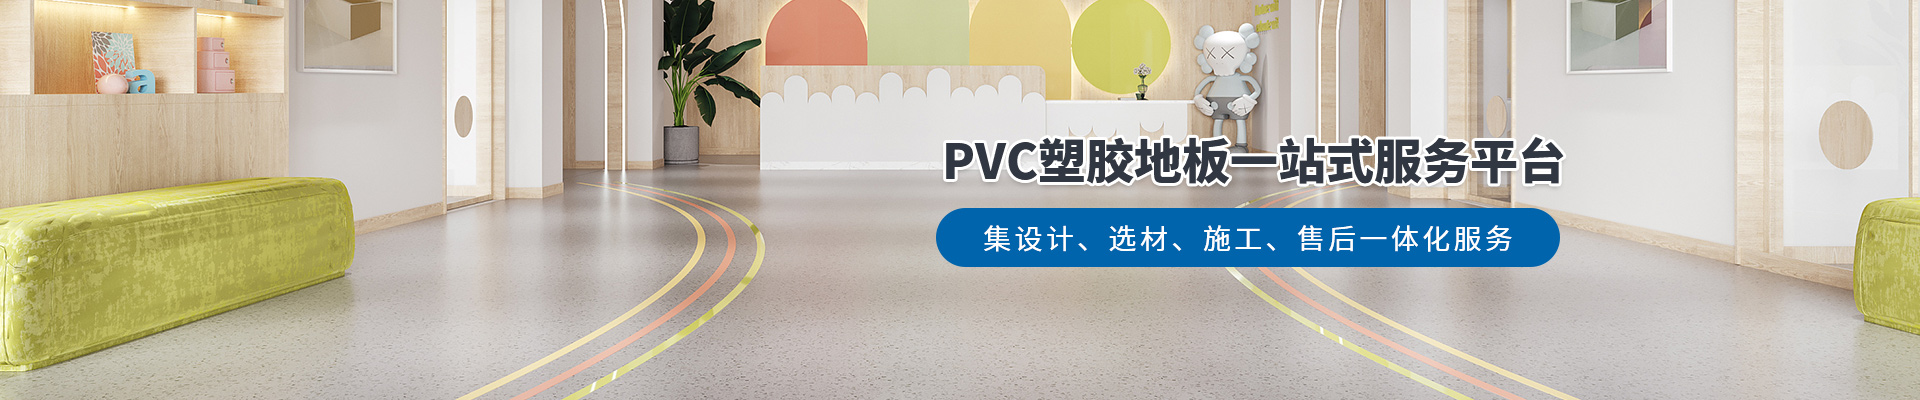 鳳城橡塑，PVC塑膠地板一站式服務平臺